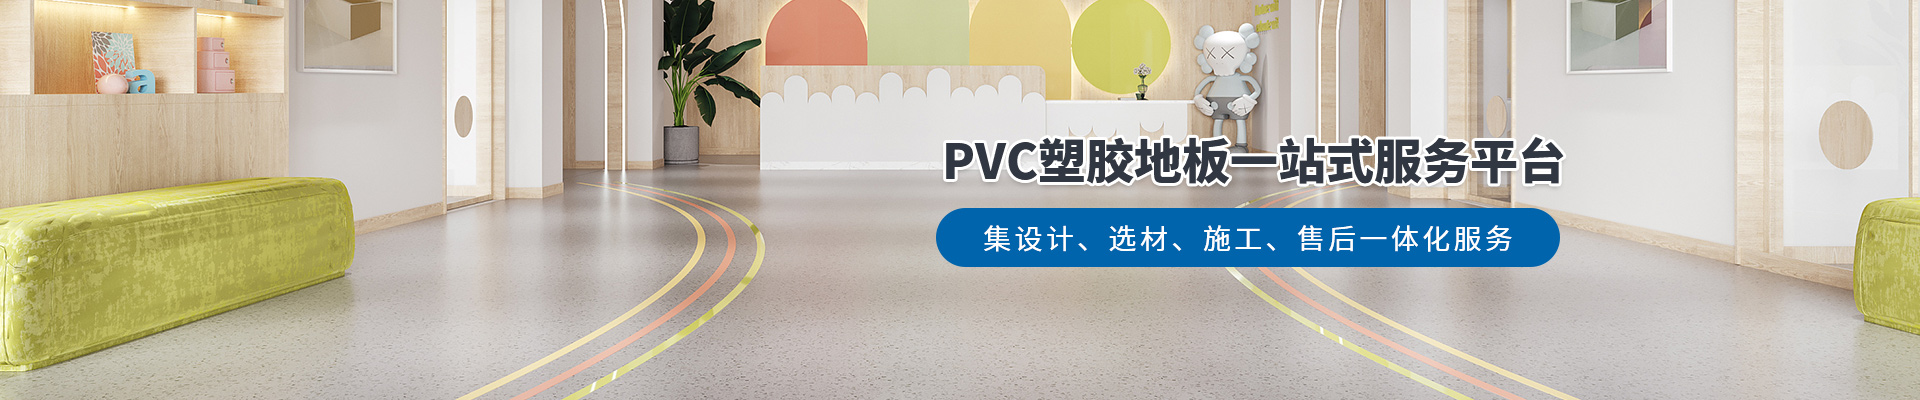 鳳城橡塑，PVC塑膠地板一站式服務平臺